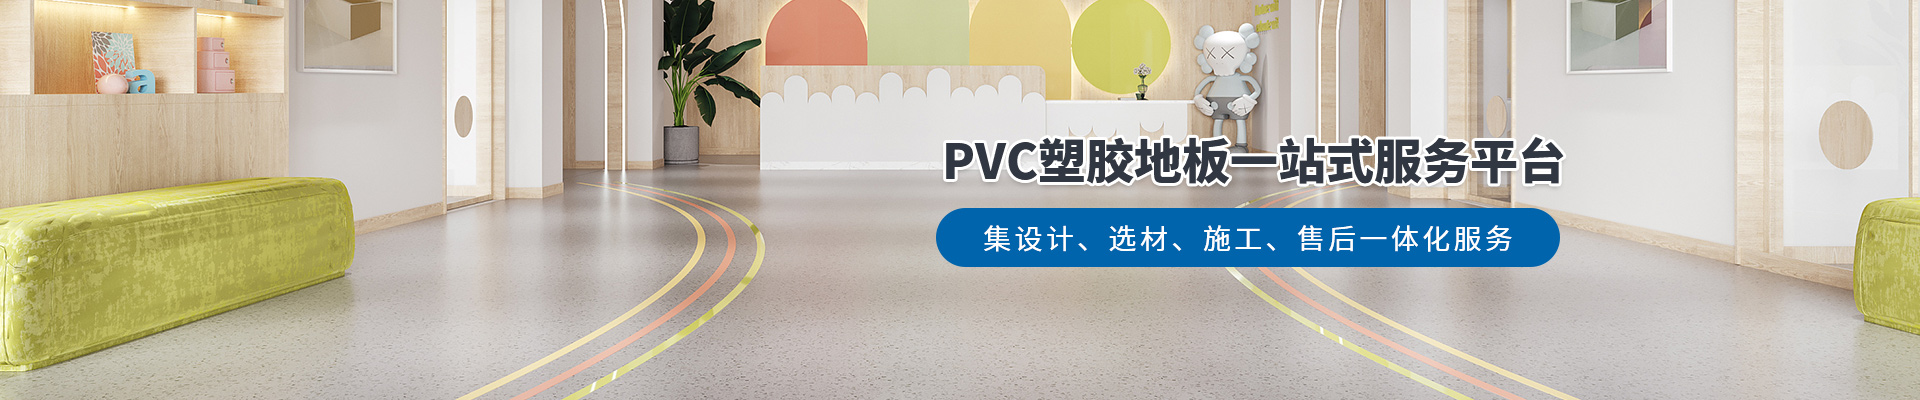 鳳城橡塑，PVC塑膠地板一站式服務平臺